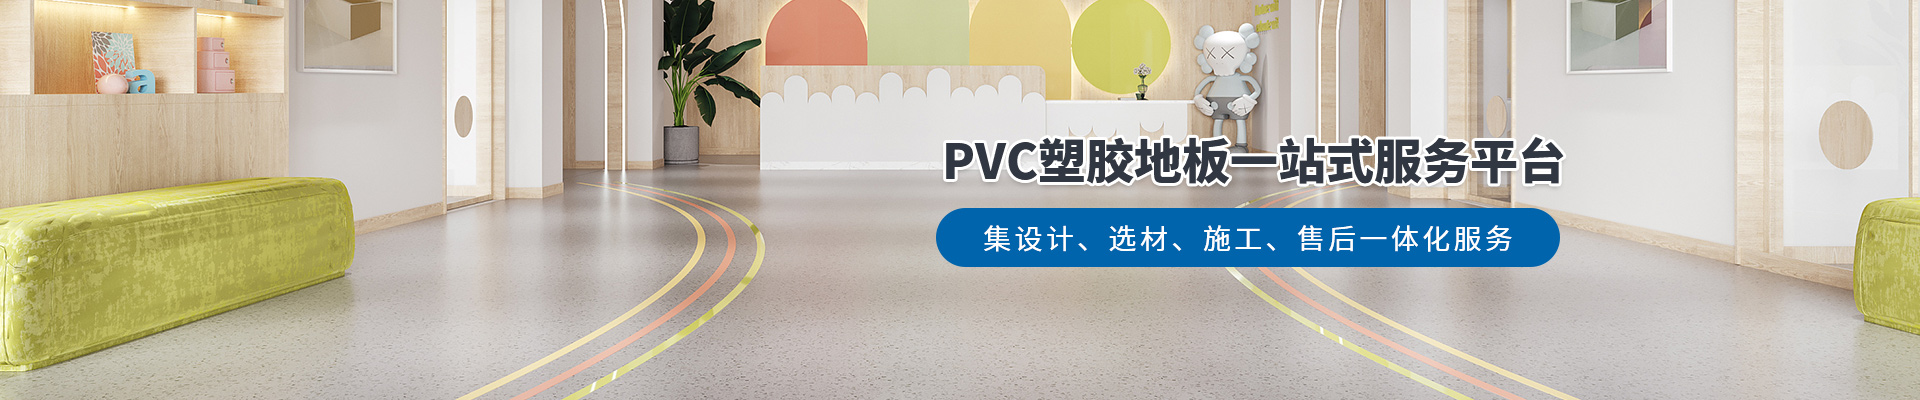 鳳城橡塑，PVC塑膠地板一站式服務平臺